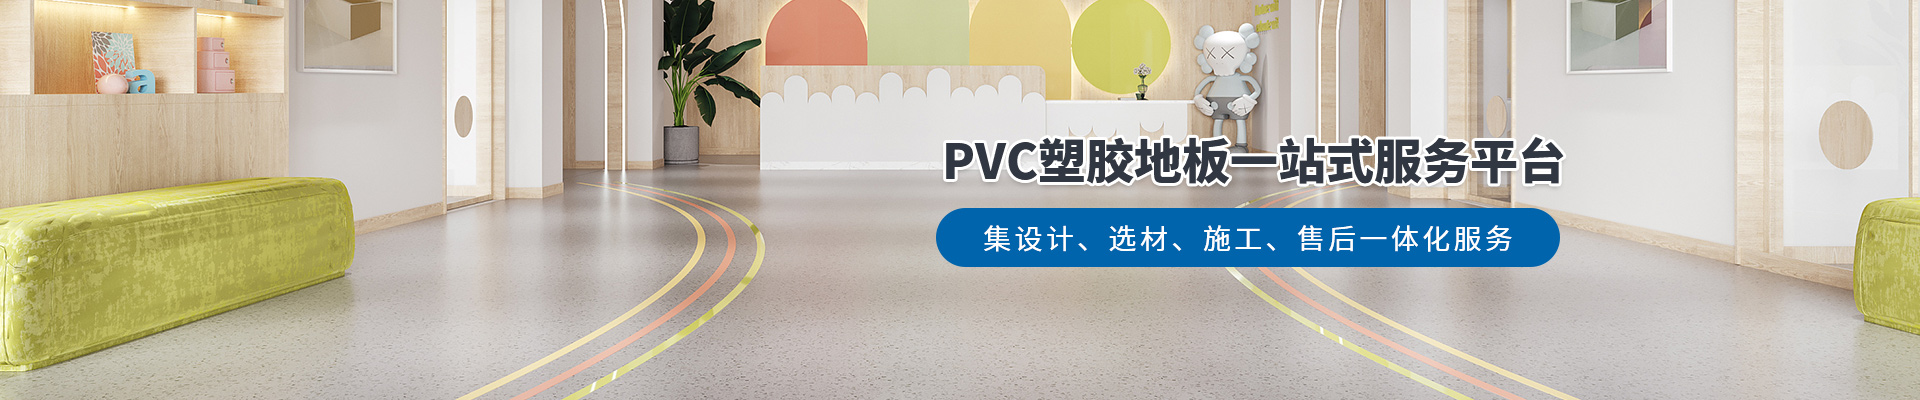 鳳城橡塑，PVC塑膠地板一站式服務平臺